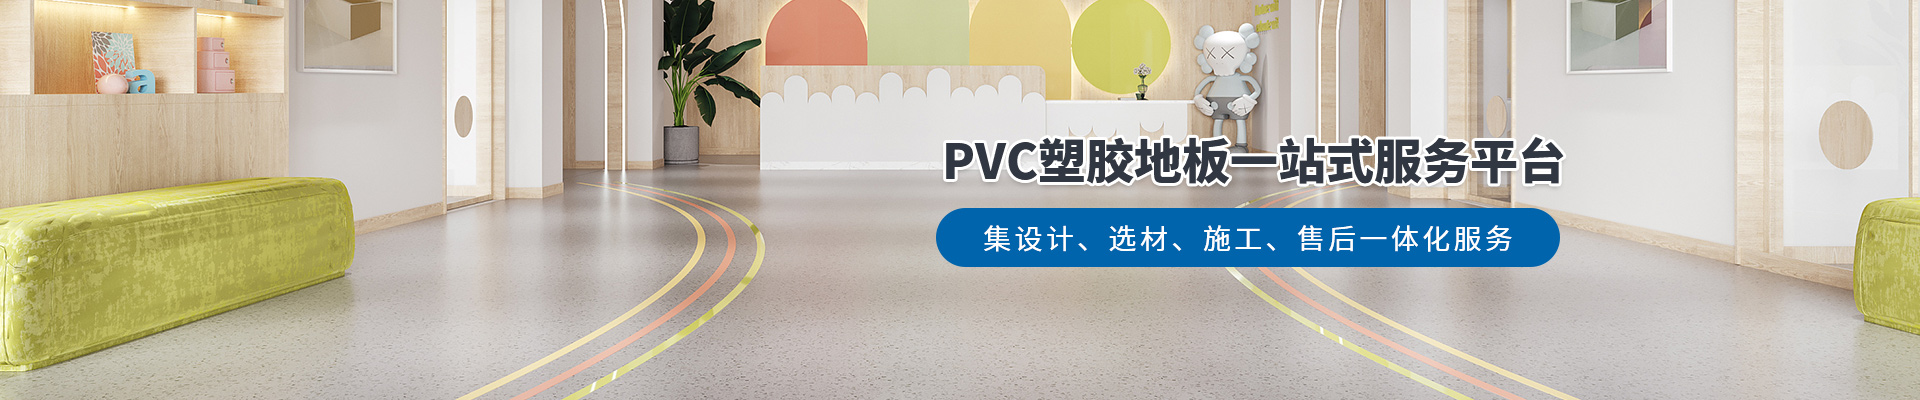 鳳城橡塑，PVC塑膠地板一站式服務平臺